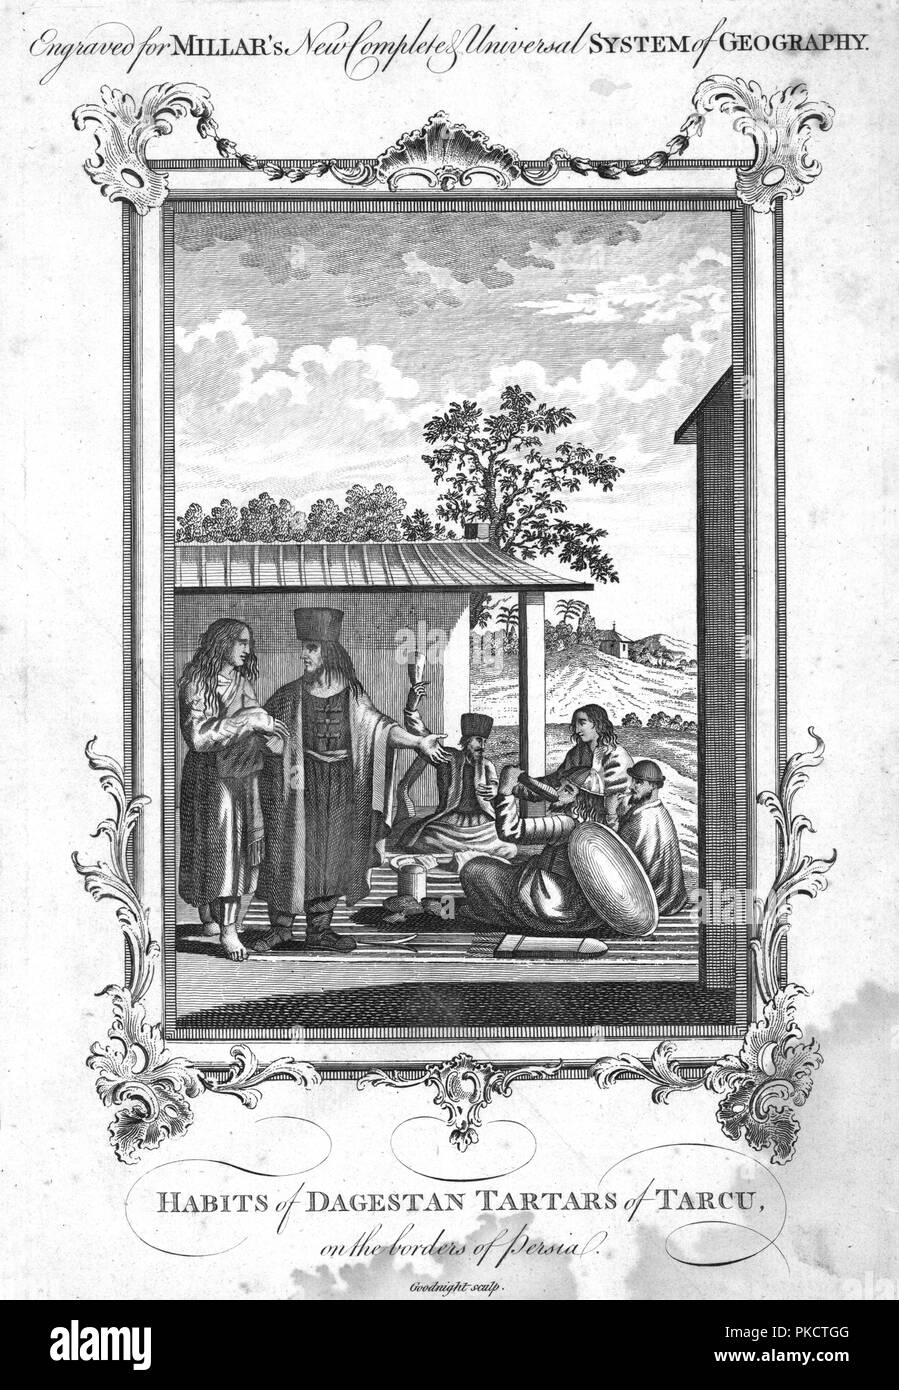 Die Nutzungsgewohnheiten von Dagestan Tataren von Tarcu, an der Grenze von Persien", 1780. Artist: NC-Goodnight. Stockfoto